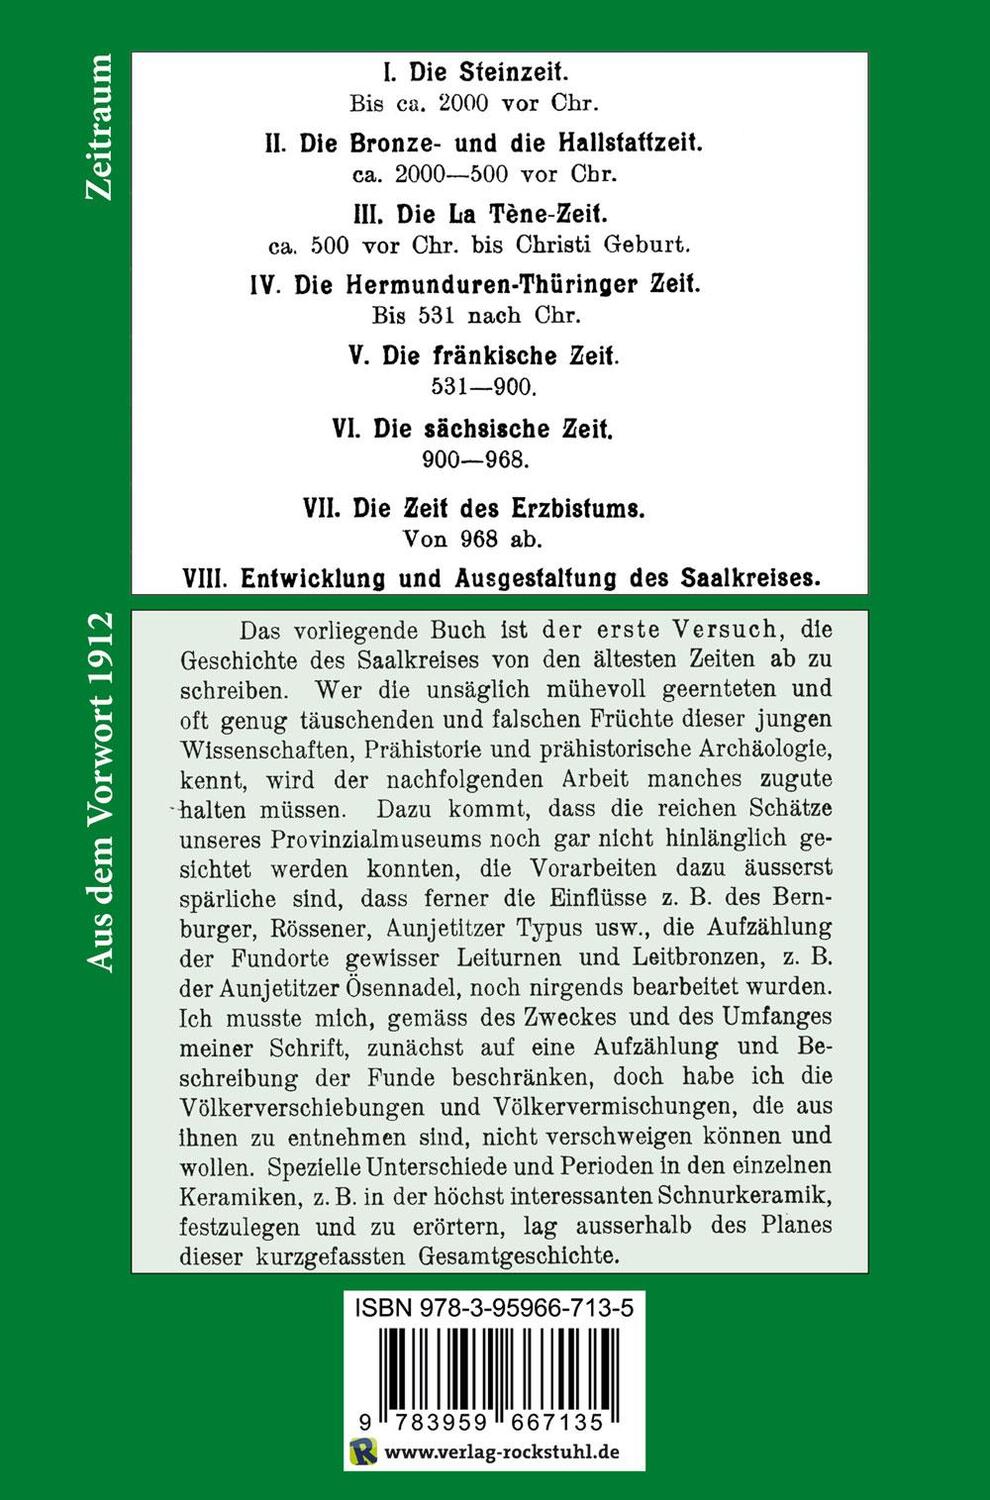 Rückseite: 9783959667135 | Geschichte des Saalkreises von der ältesten Zeit ab | Schultze-Gallera